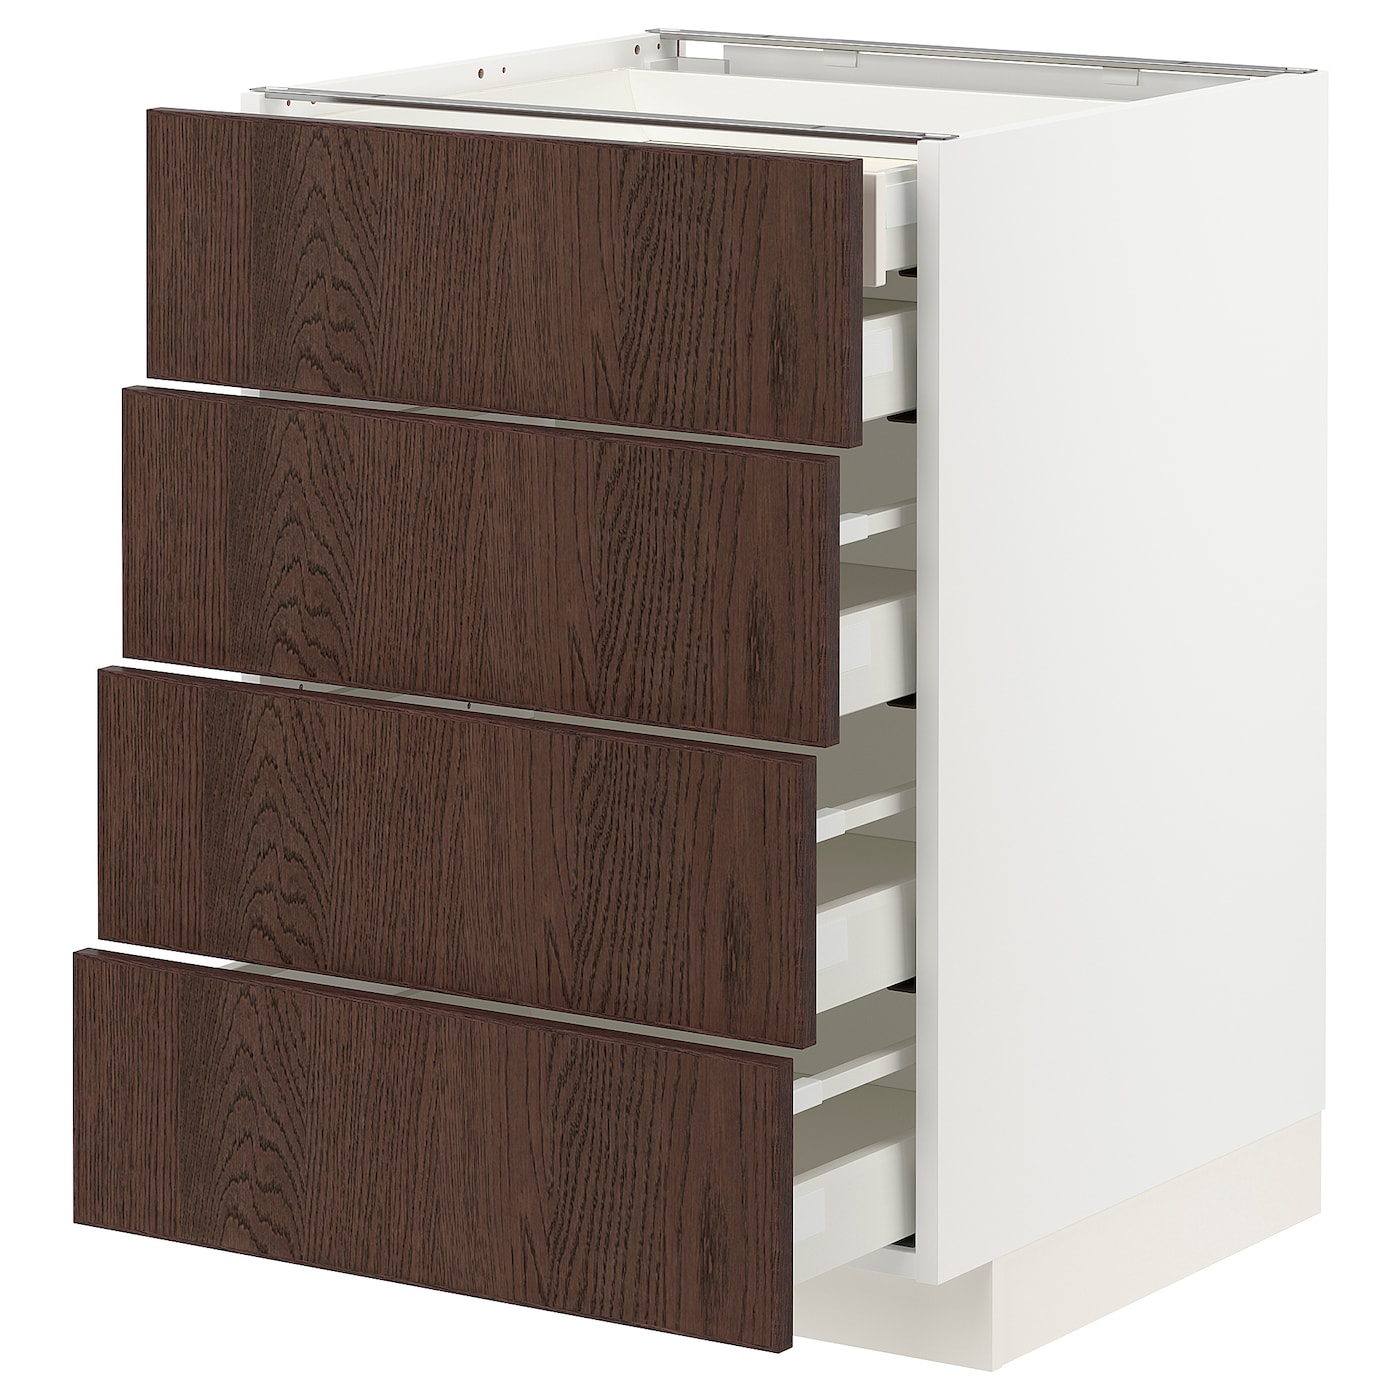 Напольный шкаф  - IKEA METOD MAXIMERA, 88x61,6x60см, белый/темно-коричневый, МЕТОД МАКСИМЕРА ИКЕА